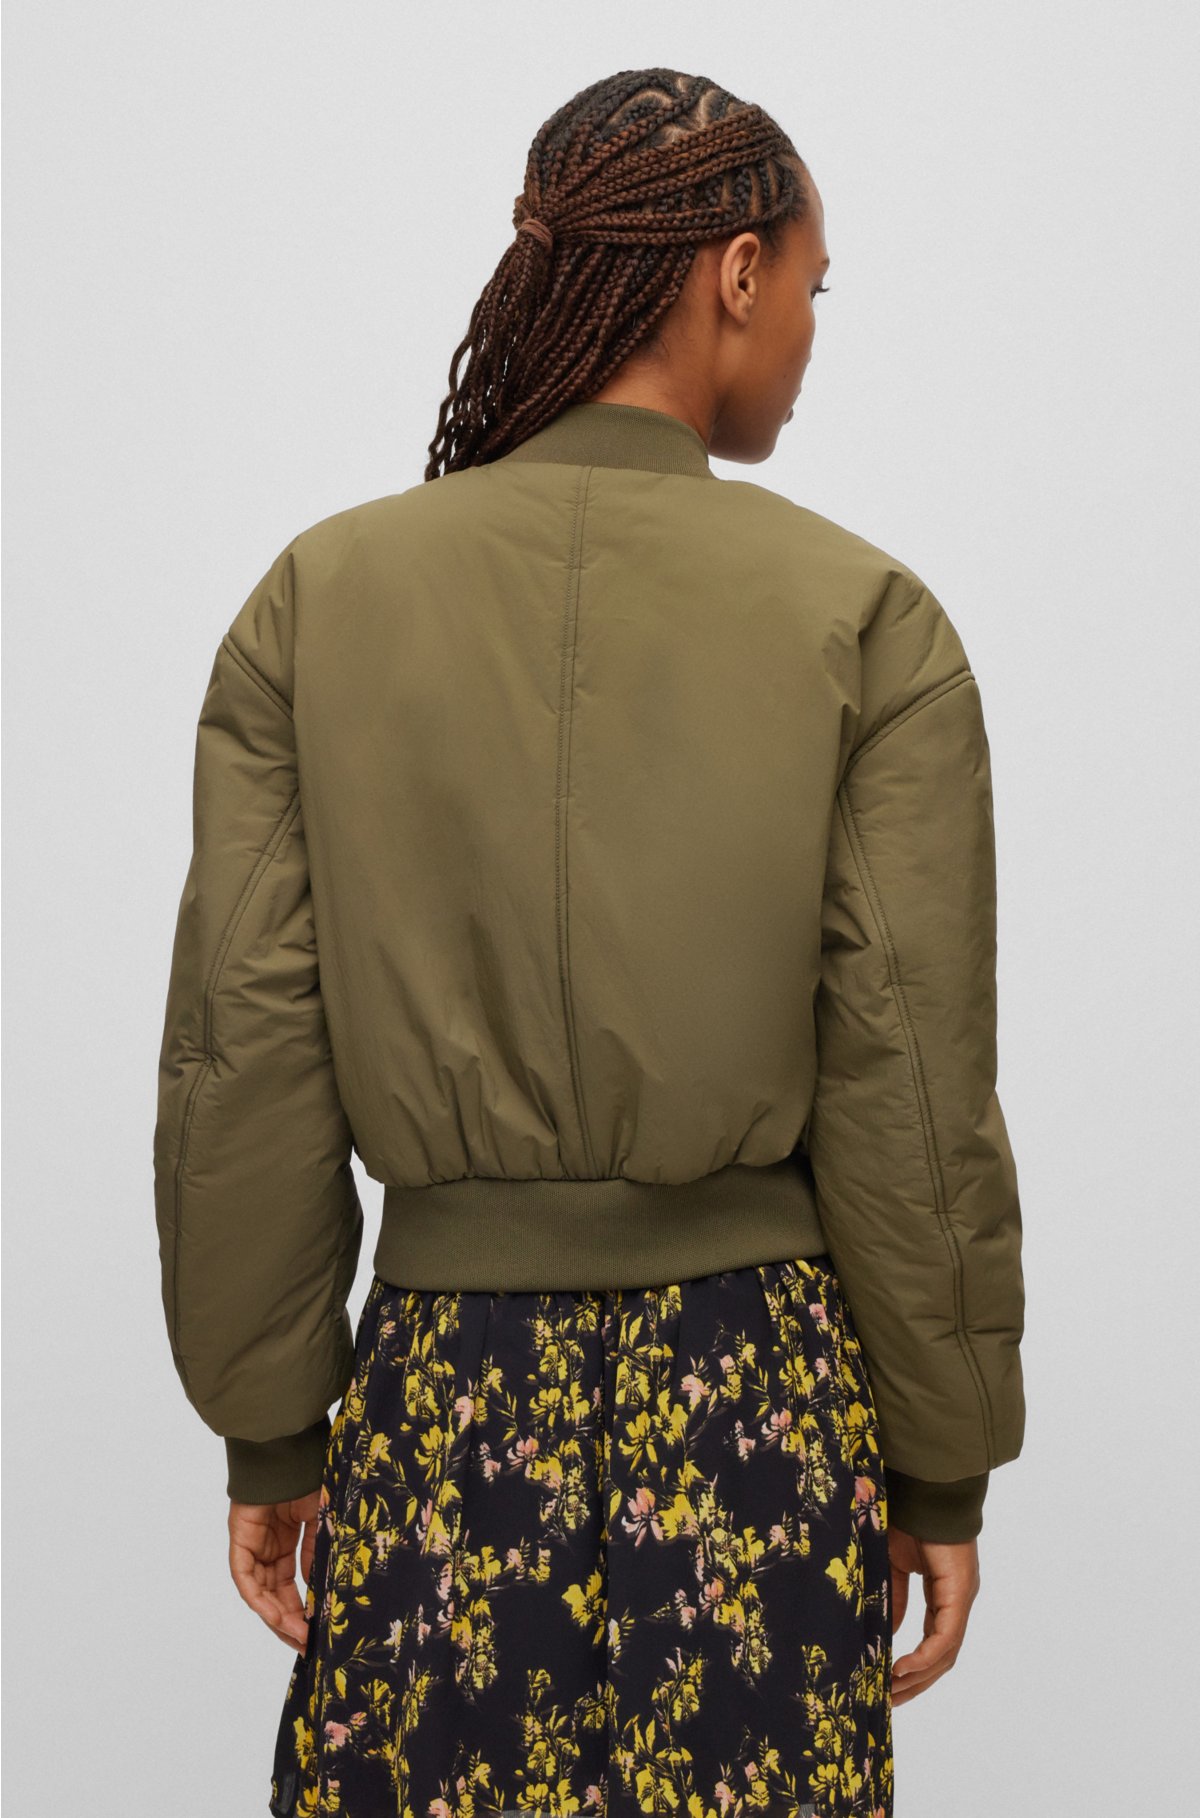 HUGO BOSS  Women's Cropped Jackets